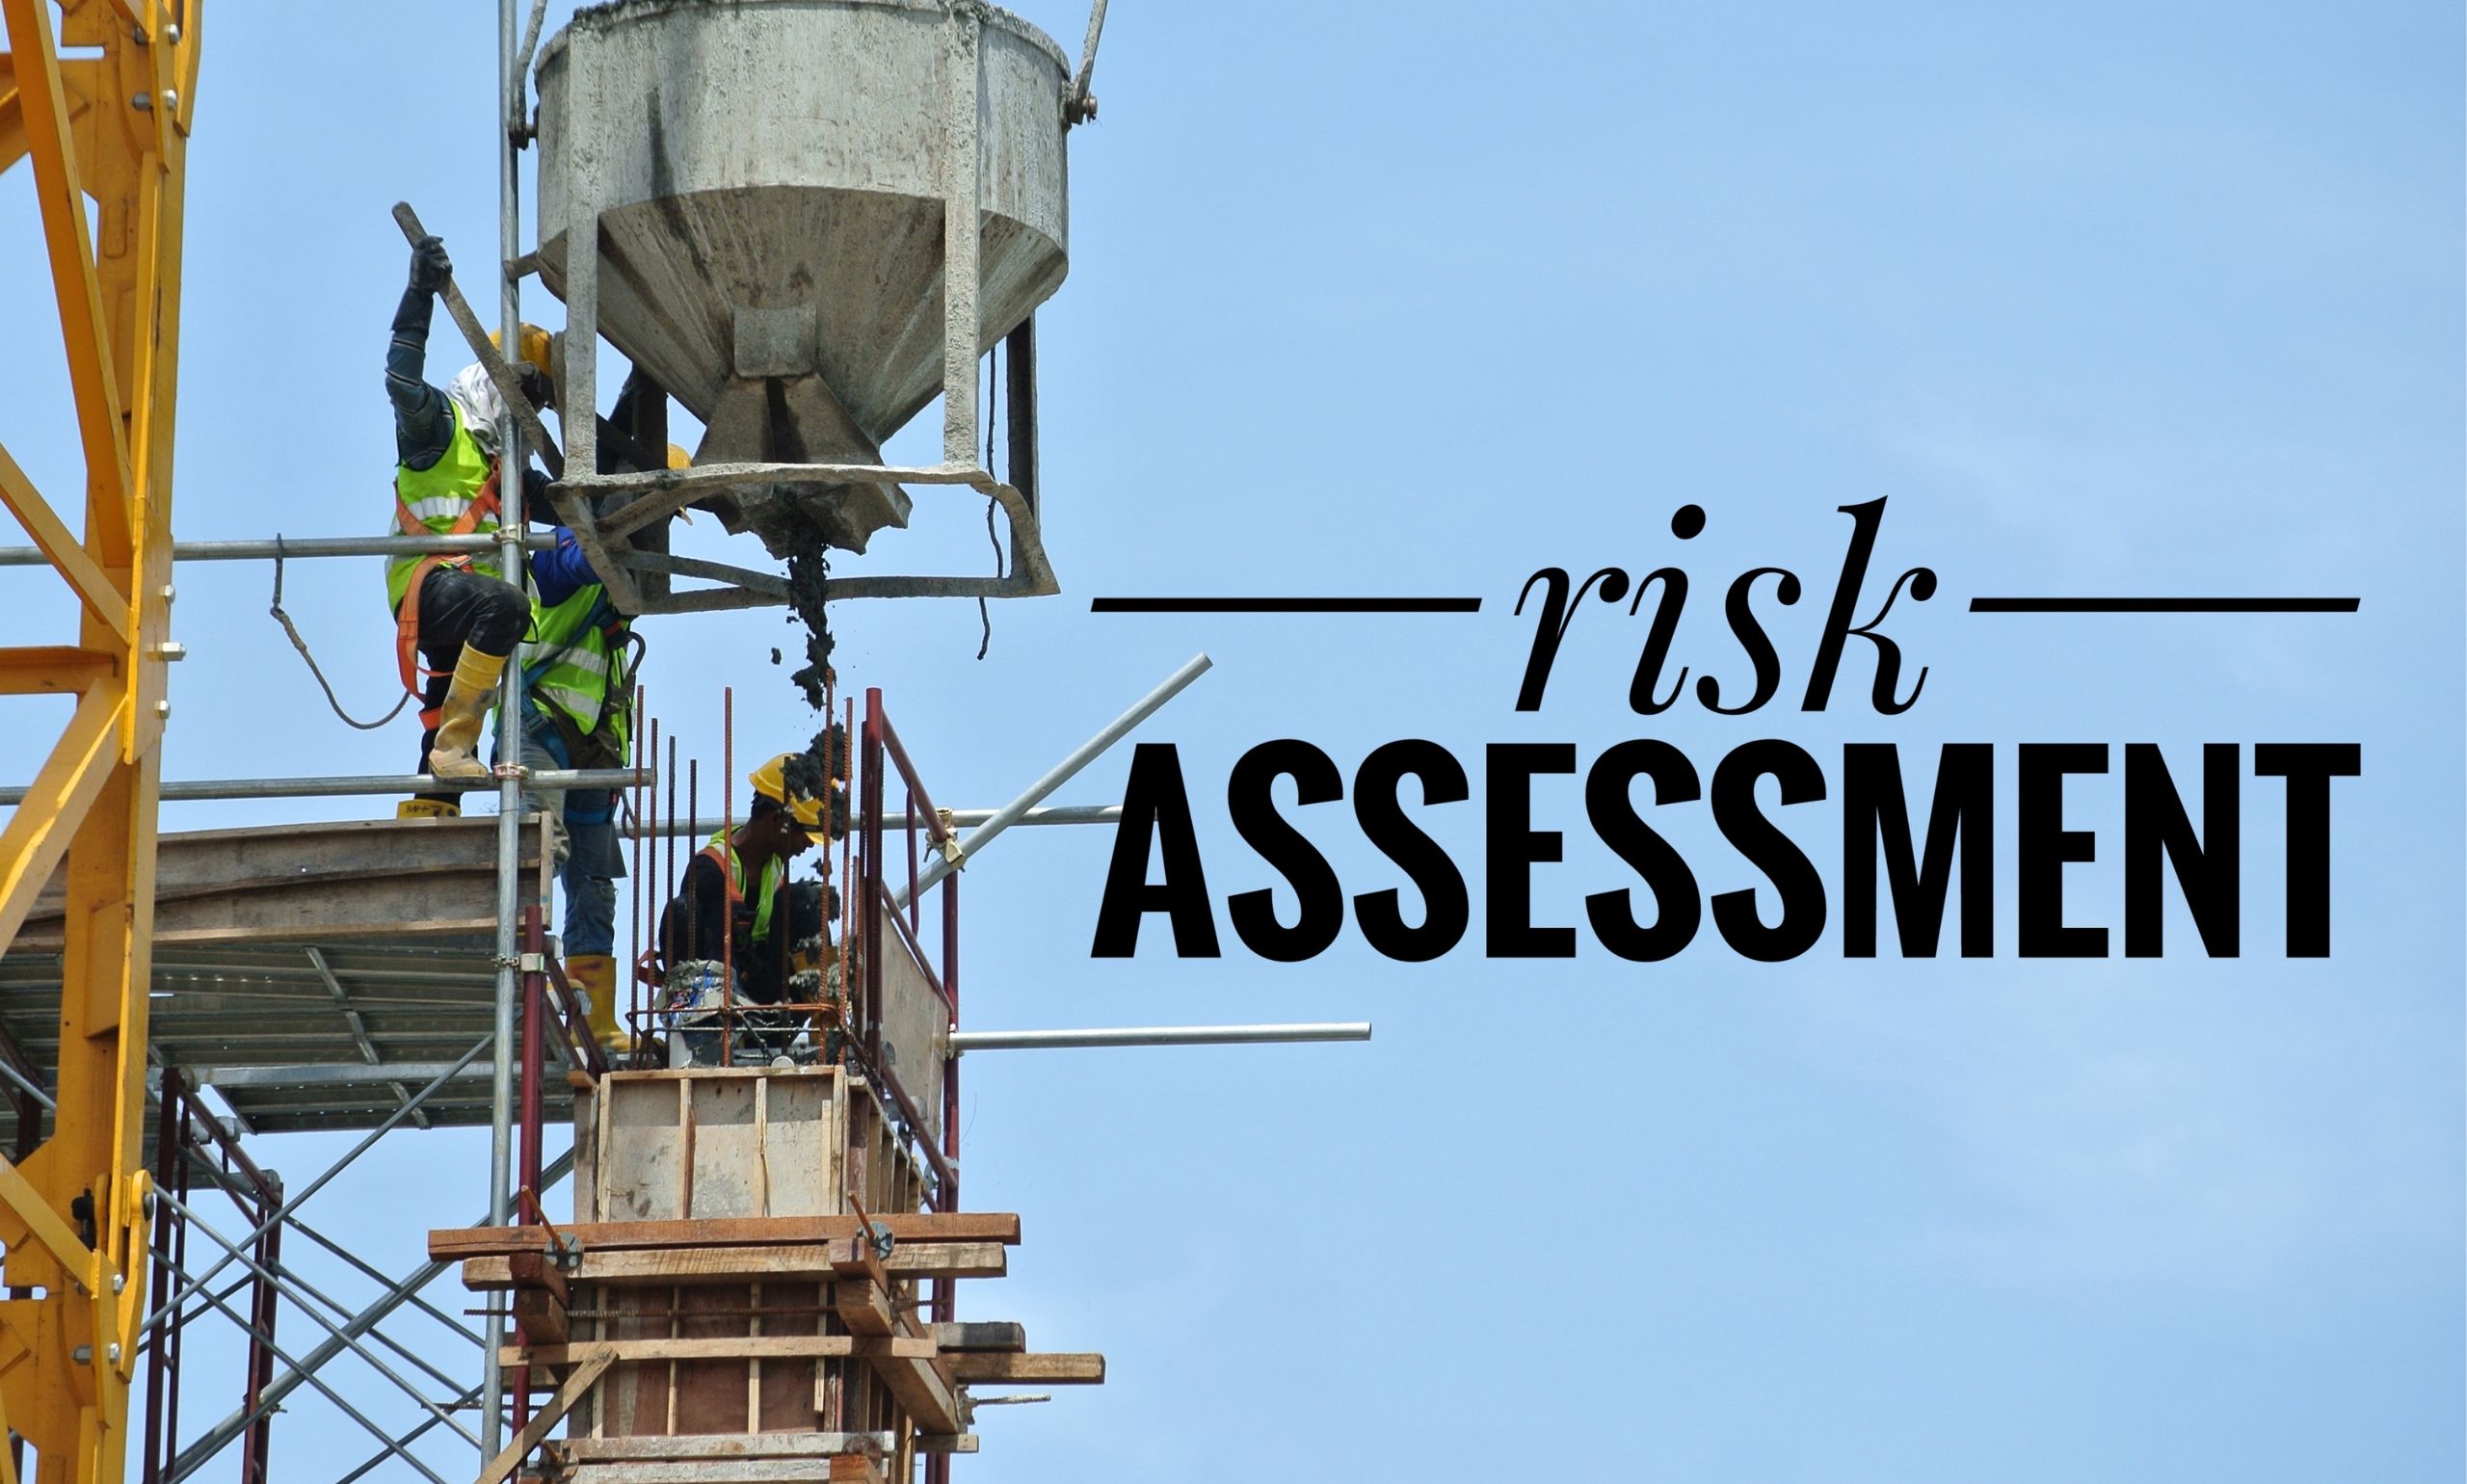 Construction Risk Assessment